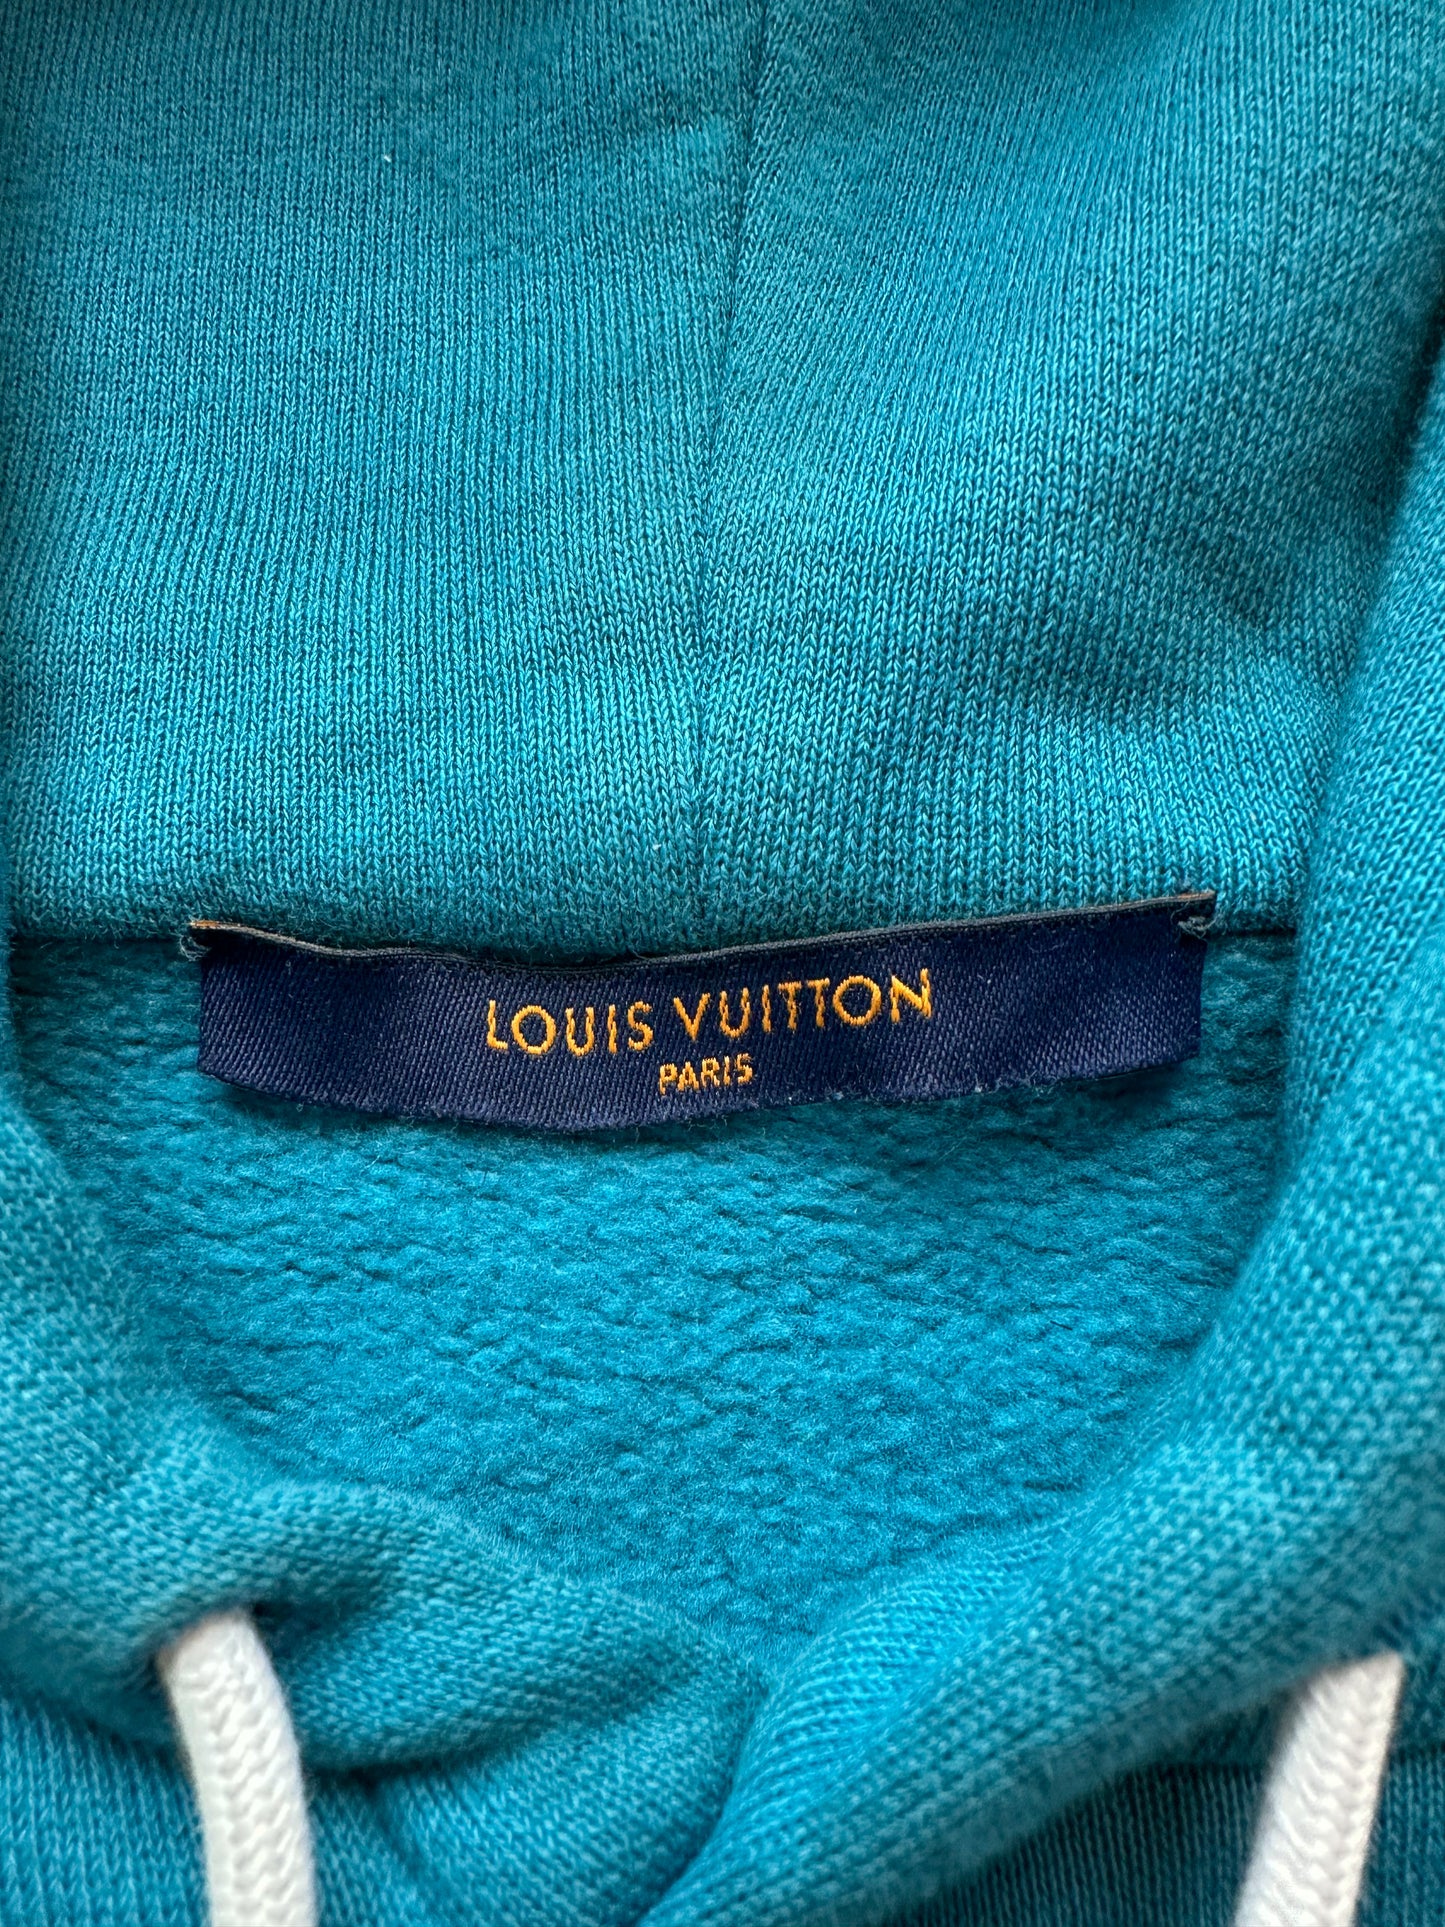 lv hoodie blue